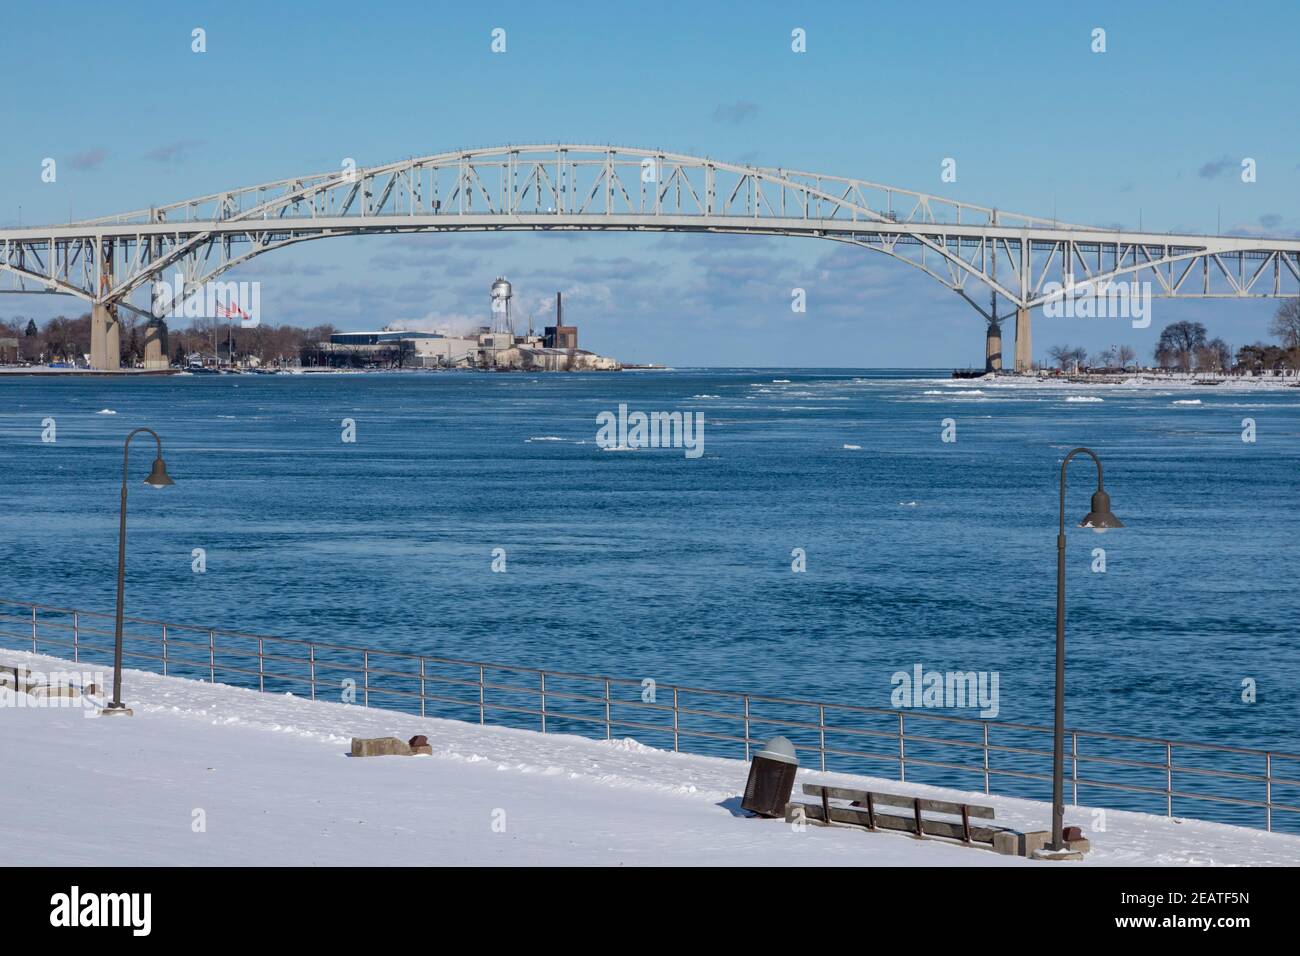 Port Huron, Michigan - le Blue Water Bridge, qui relie les États-Unis (à gauche) et le Canada au-dessus de la rivière St. clair à l'extrémité sud du lac Hur Banque D'Images